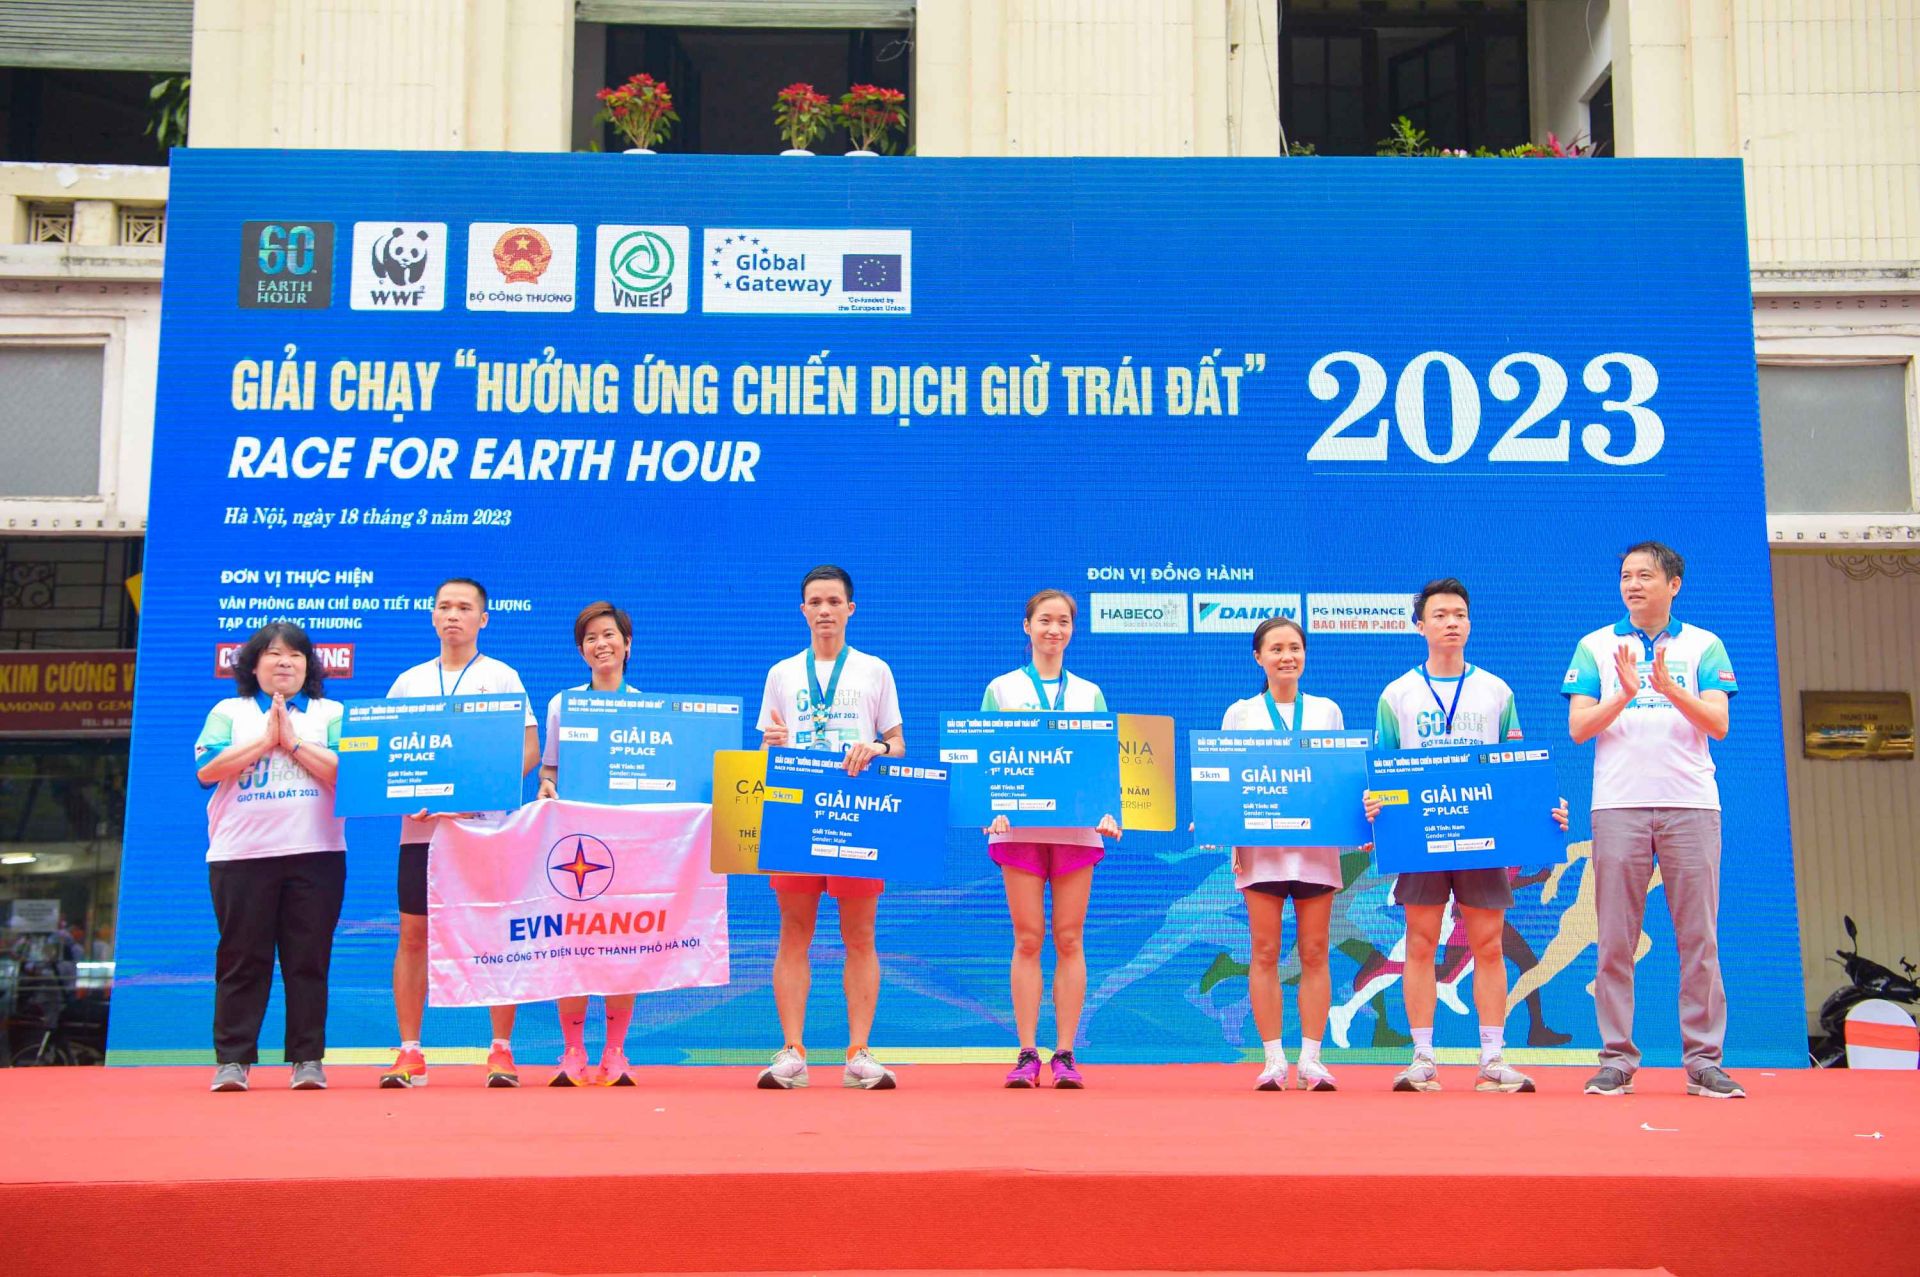 Đại diện Ban tổ chức trao giải cho 6 vận động viên có thành tích xuất sắc nhất Giải chạy hưởng ứng Chiến dịch Giờ Trái đất năm 2023